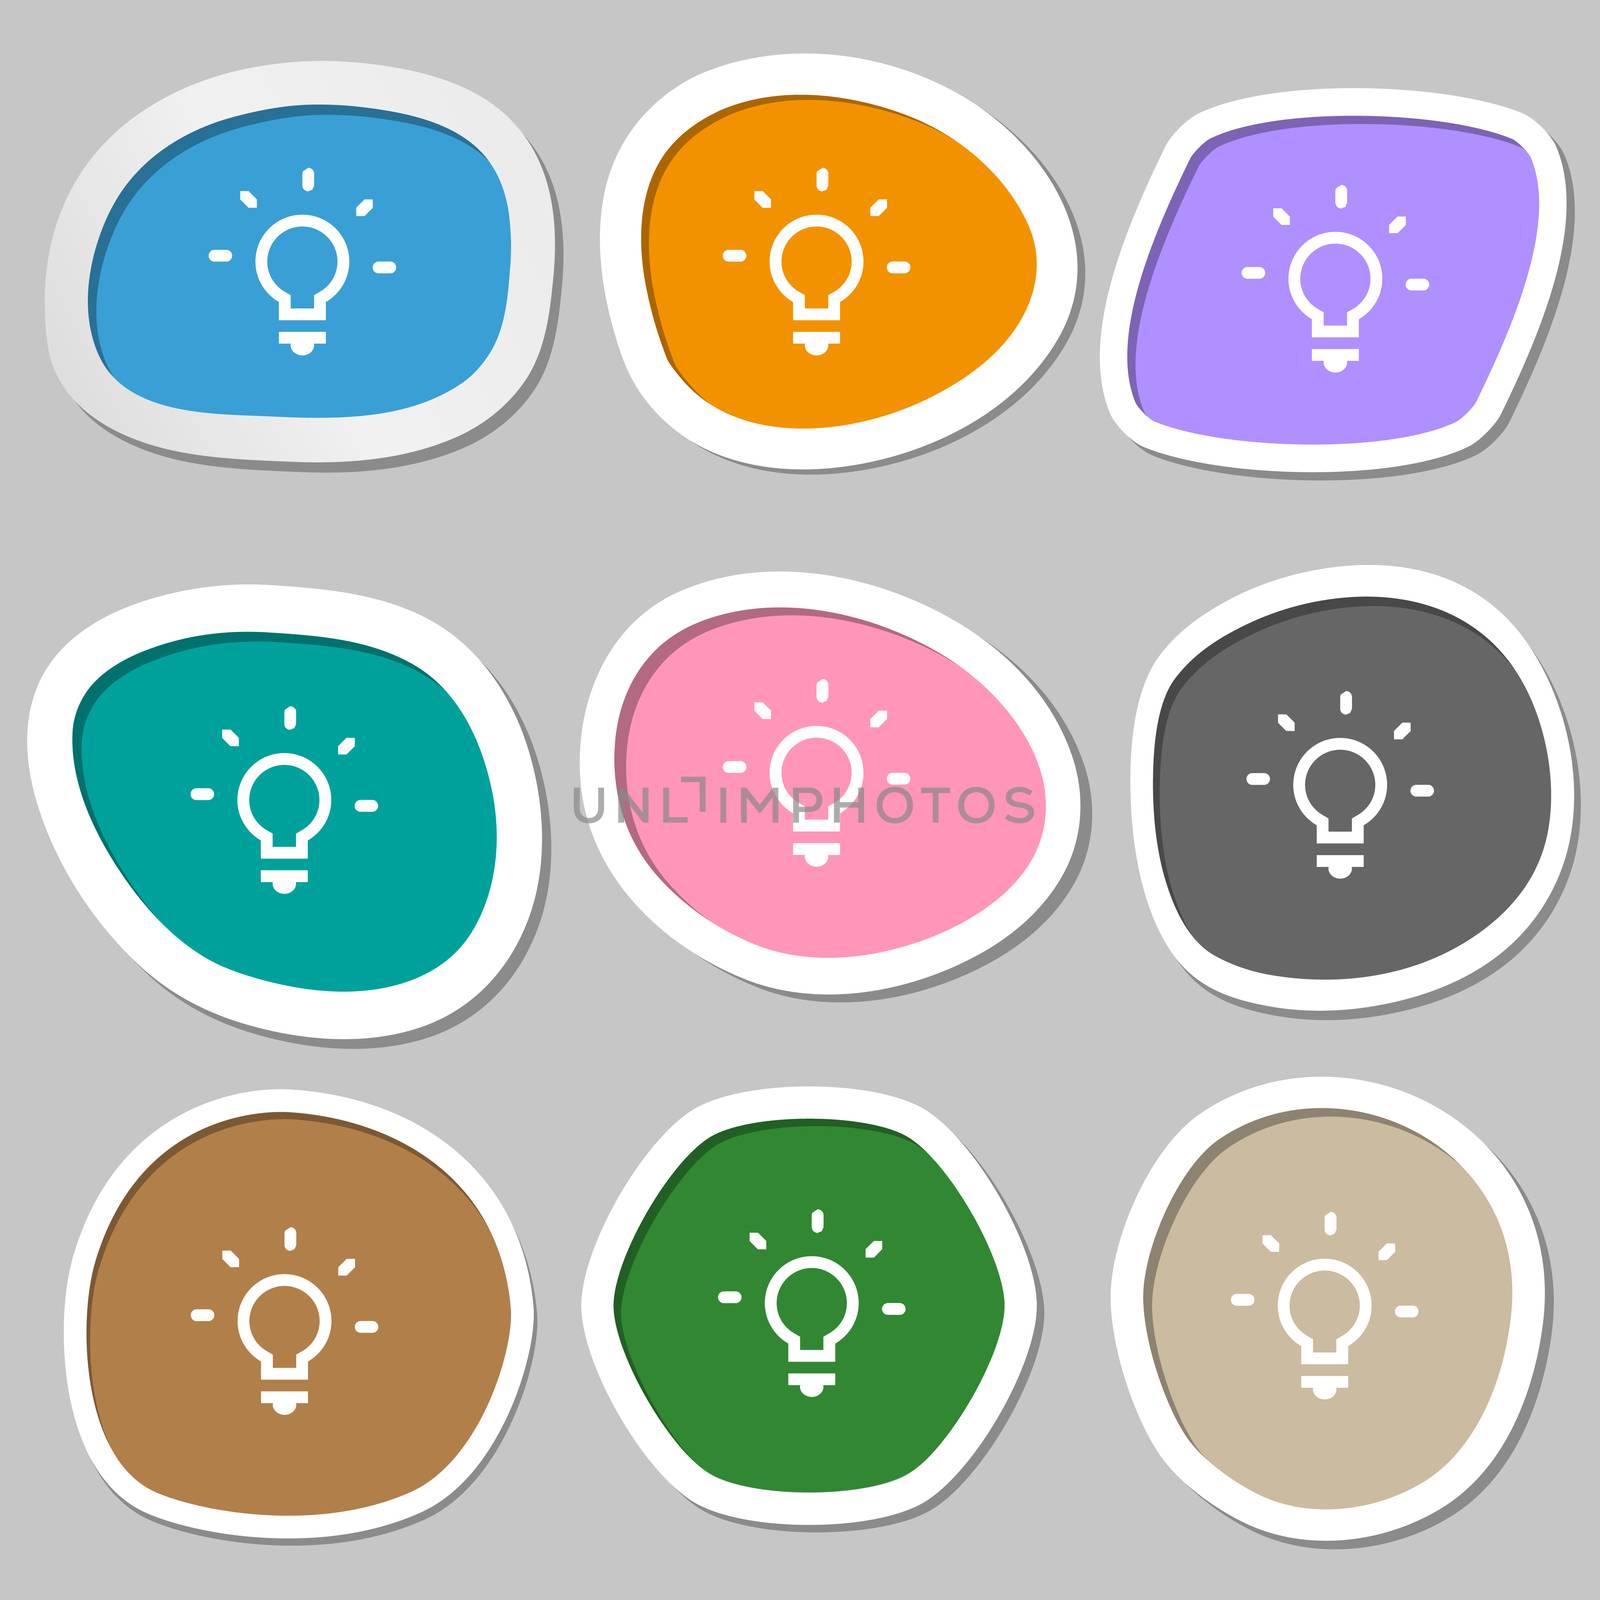 Light lamp, Idea icon symbols. Multicolored paper stickers. illustration